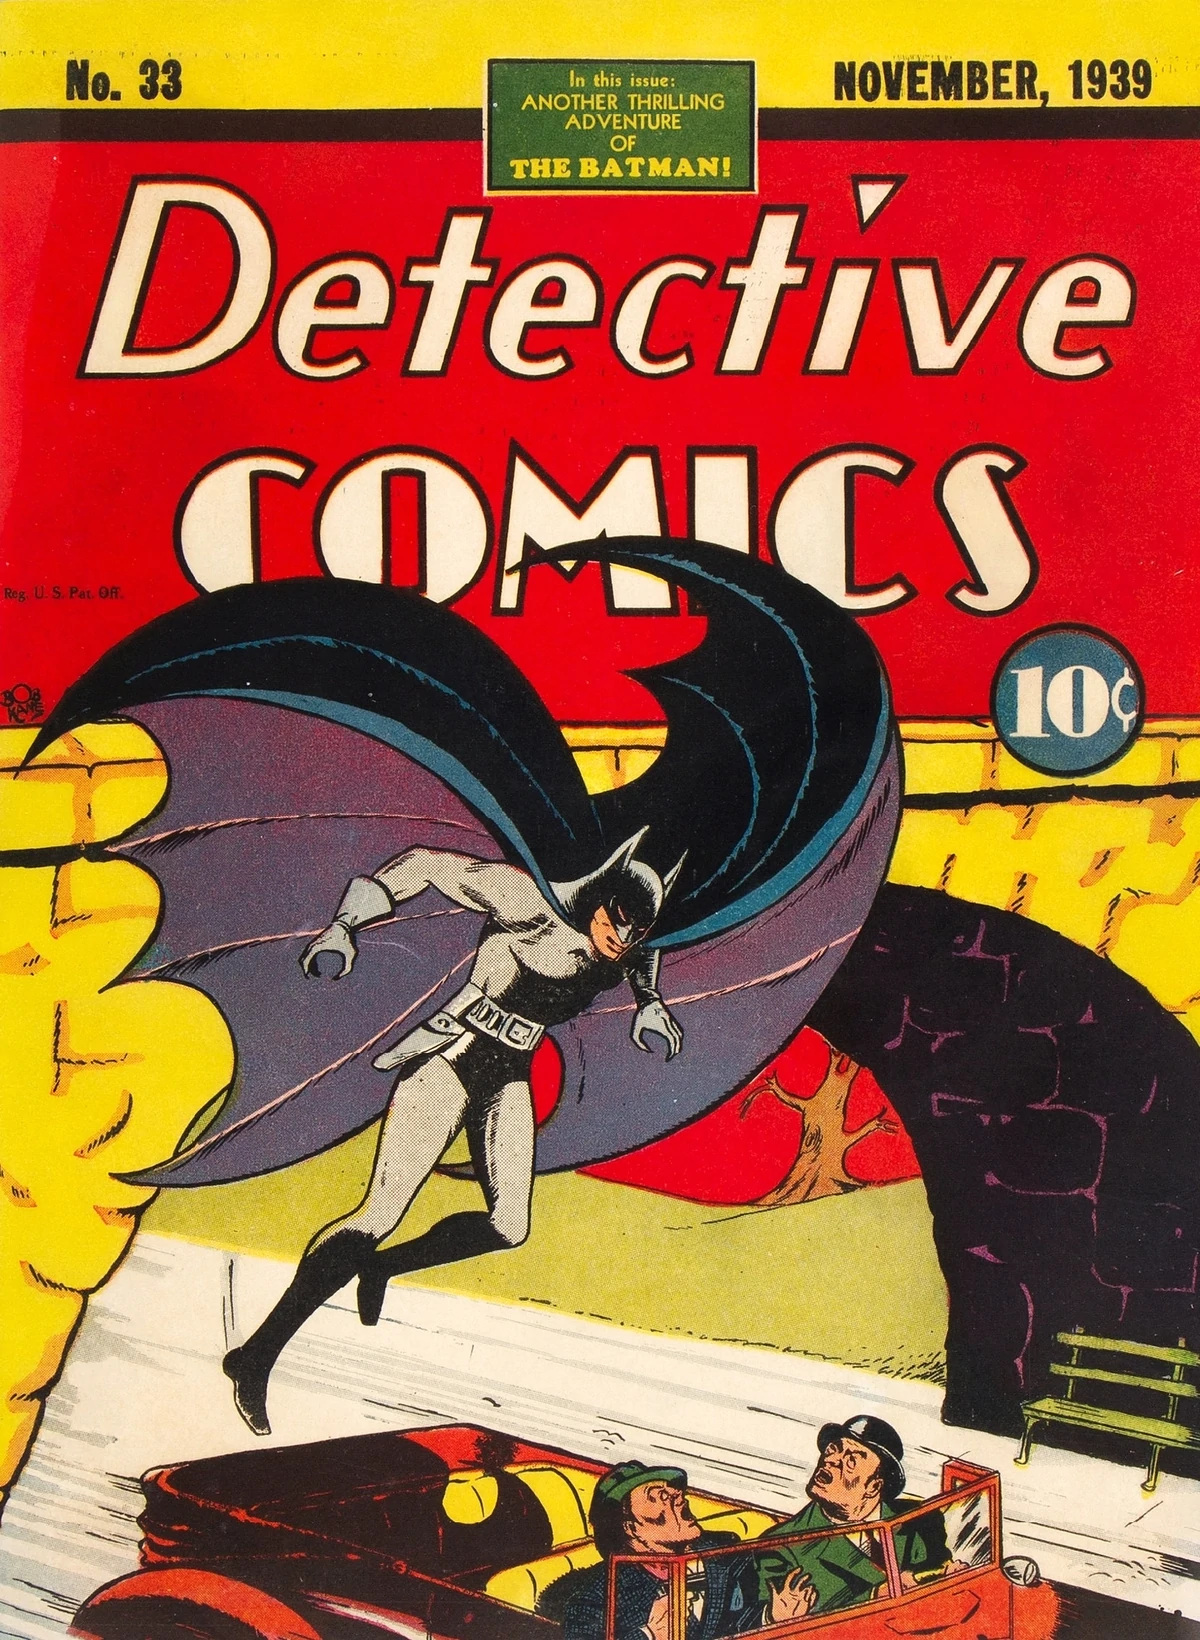 Detective Comics No. 33